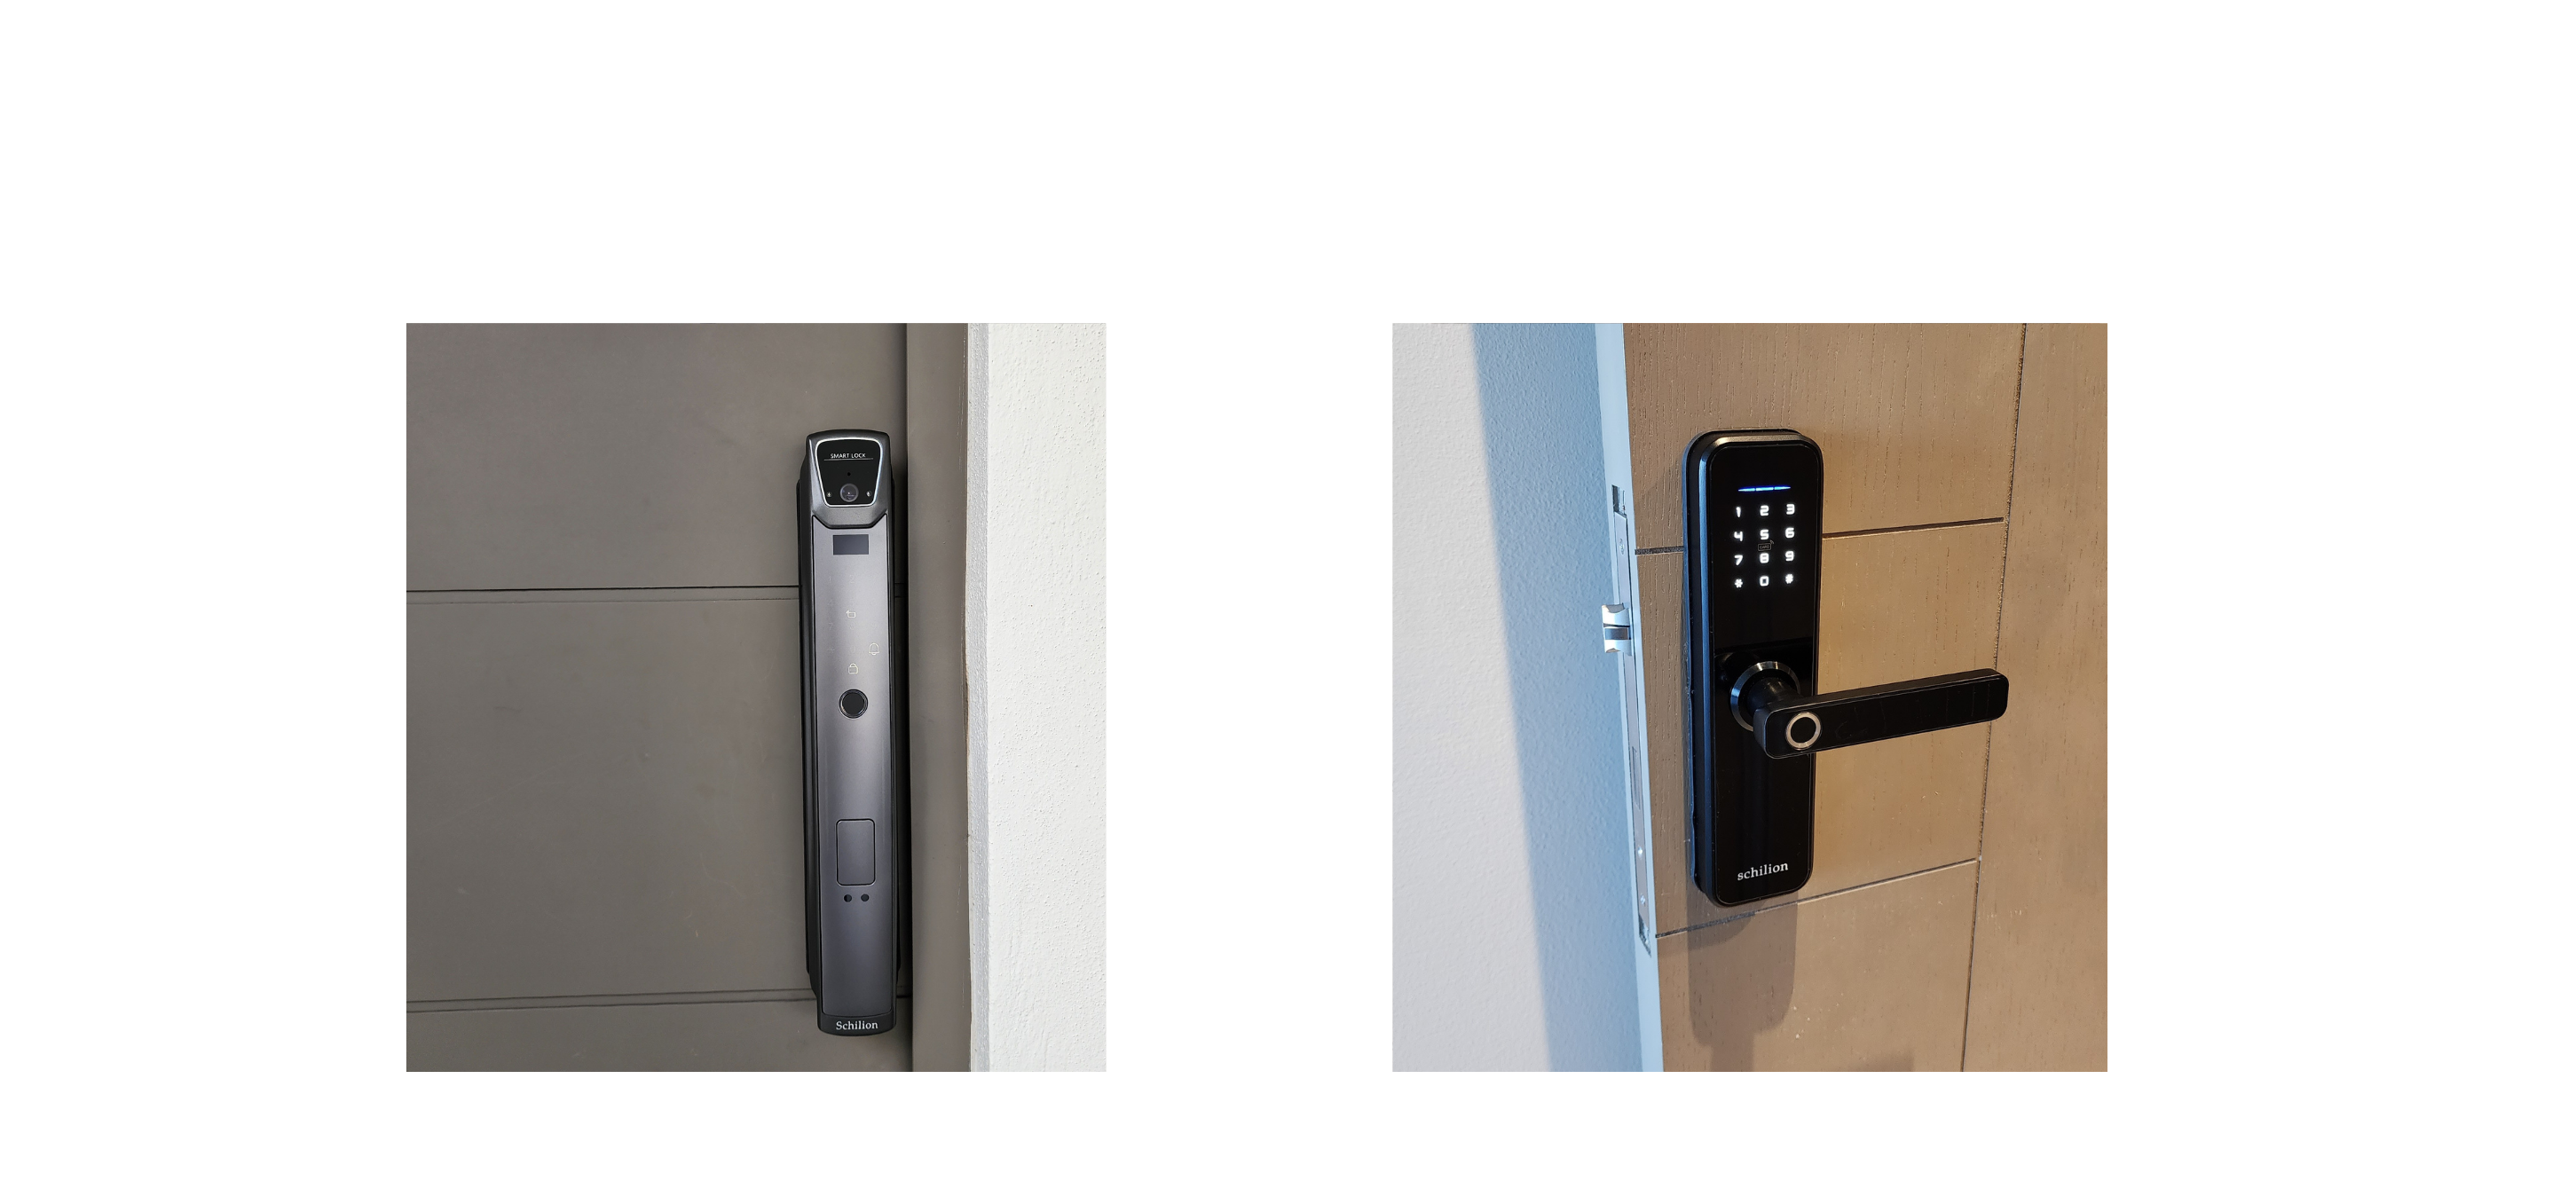 Cerraduras para puertas. Cerraduras inteligentes perfectas para tu hogar. Desbloquea tu cerradura por medio de huella digital, código, tarjeta o app. Seguridad para el hogar.